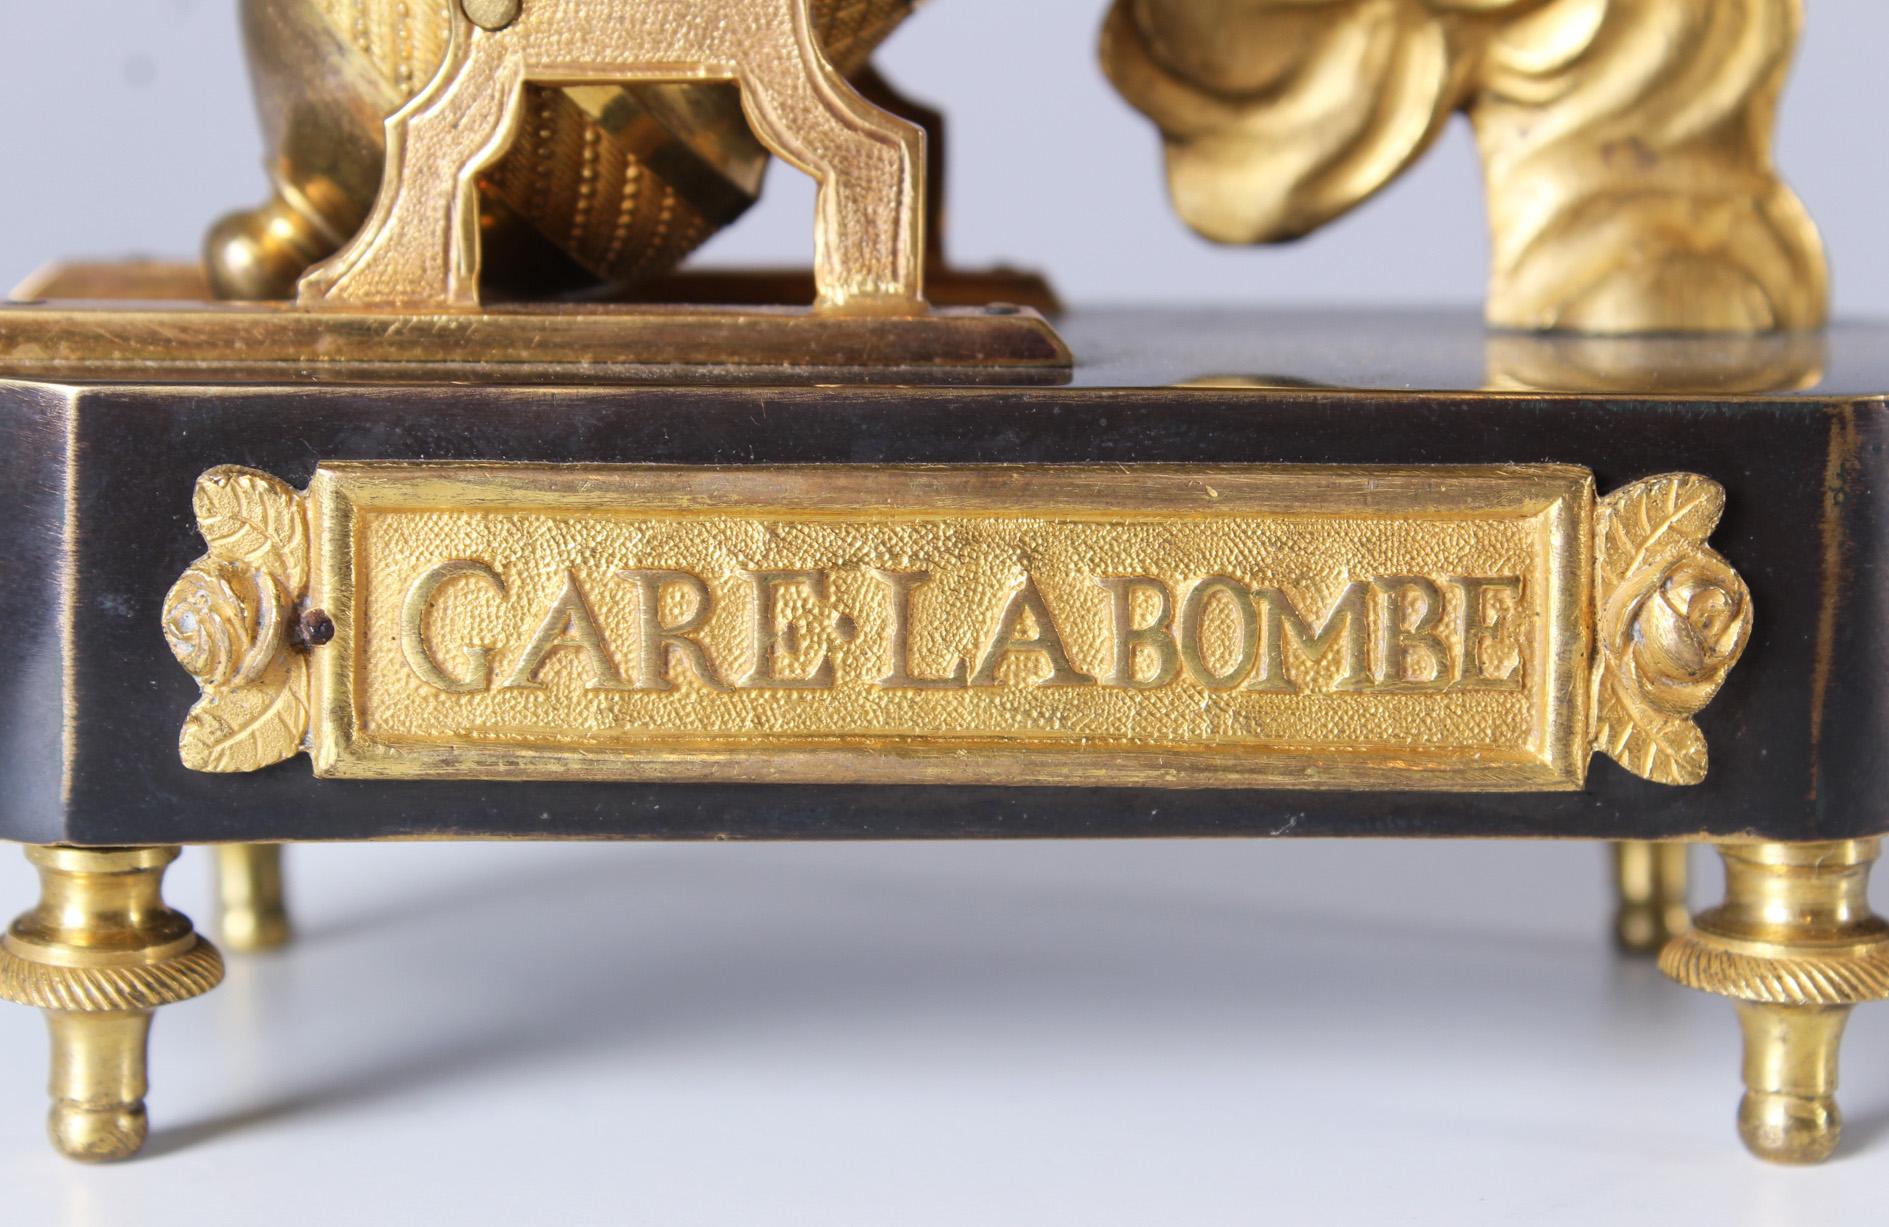 19th Century Miniatur Mantel Clock, Gare La Bombe, Cupido, France, Gilded Bronze For Sale 2